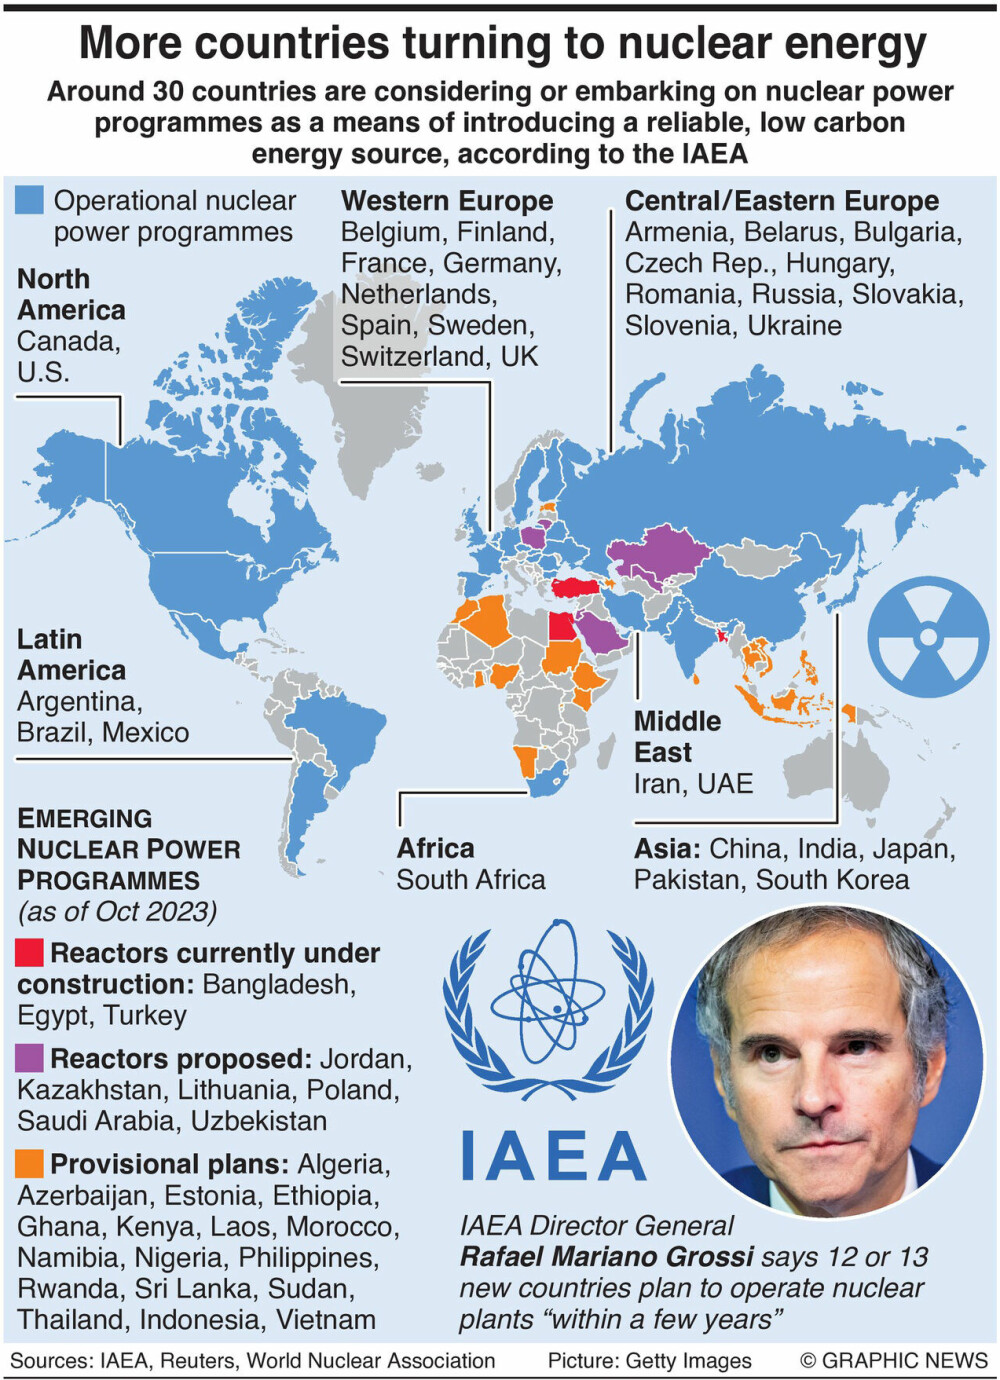 Rundt 30 land vurderer eller begynner på atomkraftprogrammer som et middel for å introdusere en pålitelig energikilde med lavt karbon, ifølge IAEA